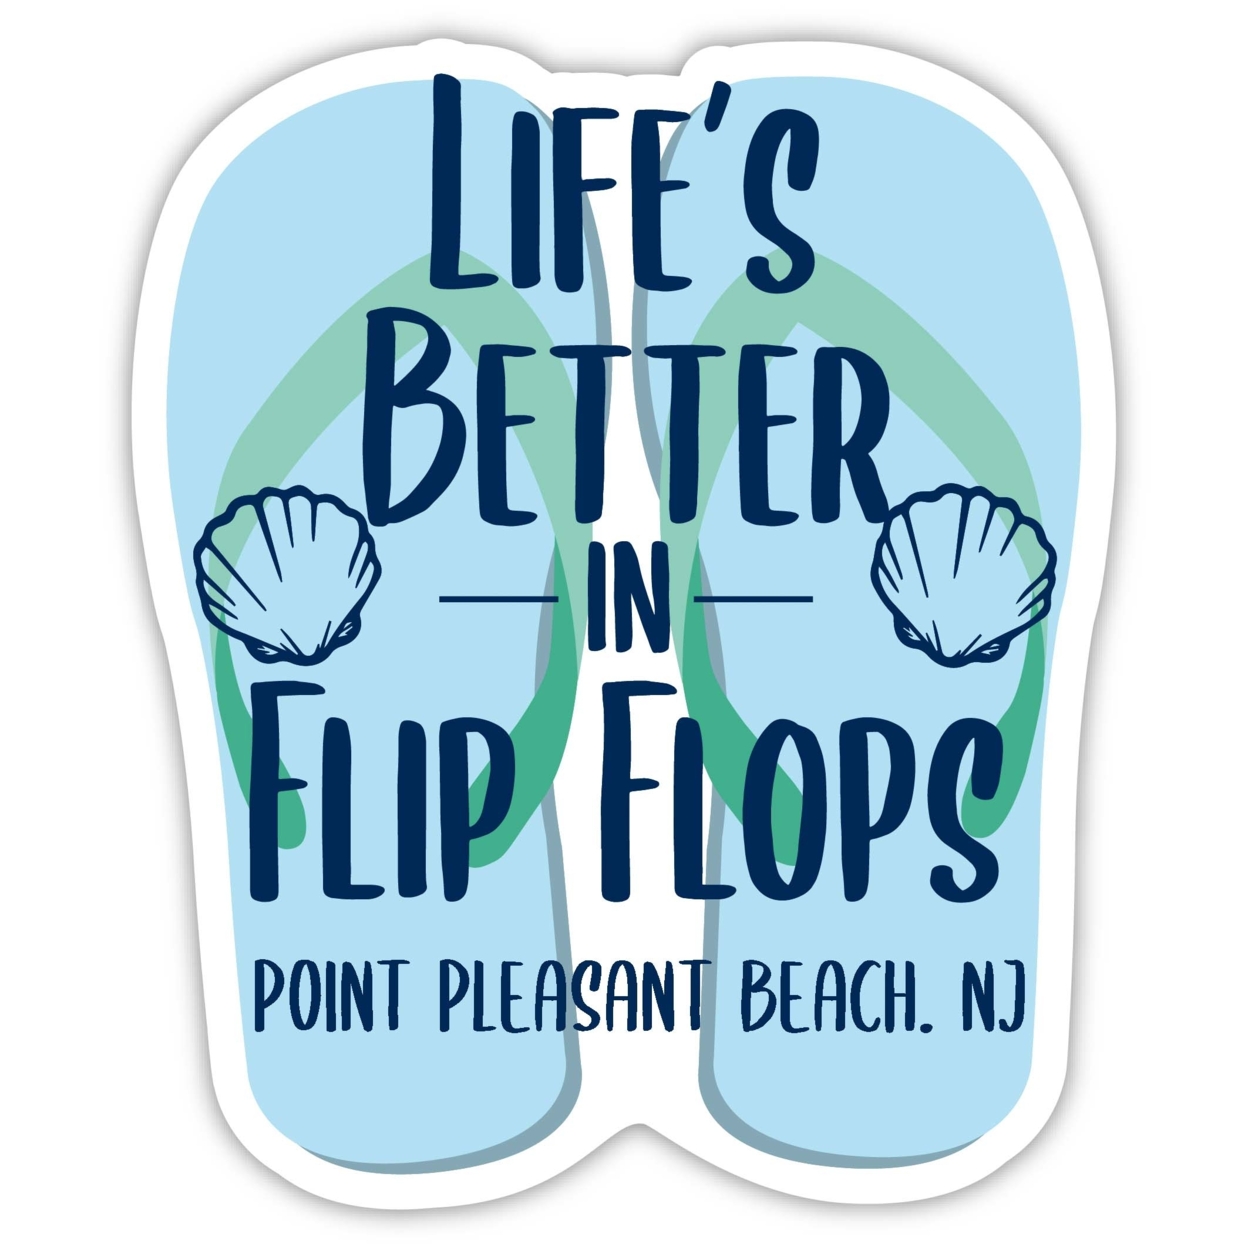 Point Pleasant Beach New Jersey Souvenir 4 Inch Vinyl Decal Sticker Flip Flop Design